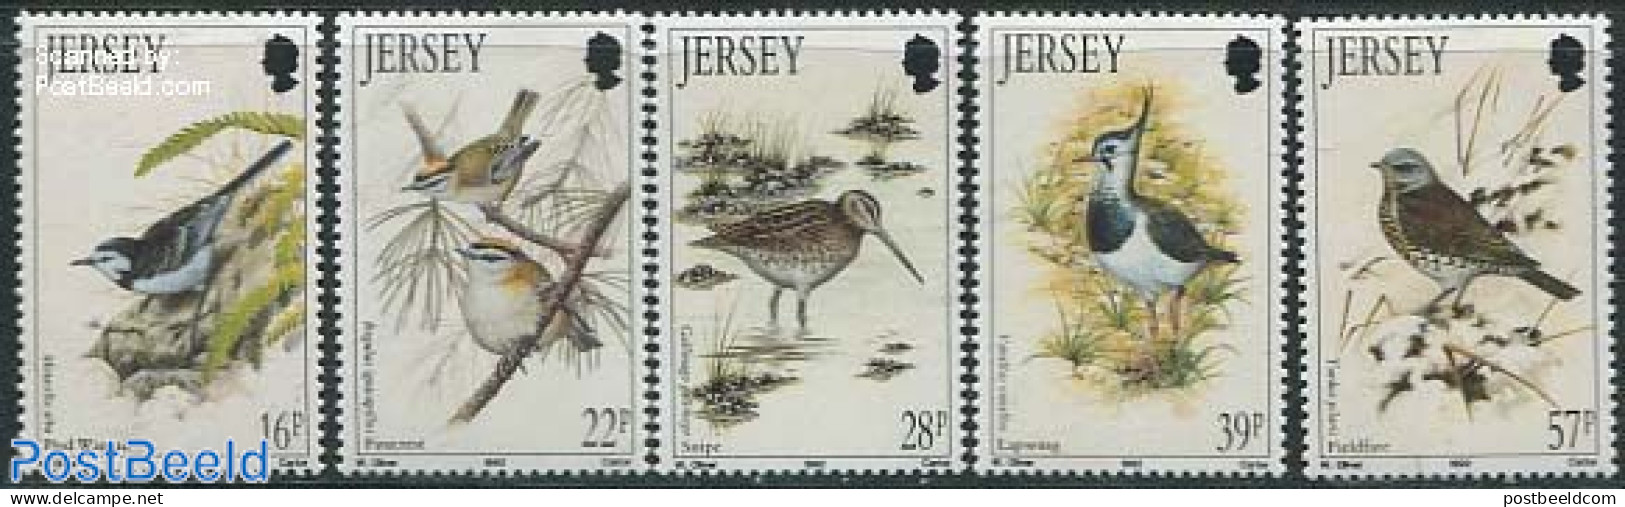 Jersey 1992 Birds 5v, Mint NH, Nature - Birds - Jersey